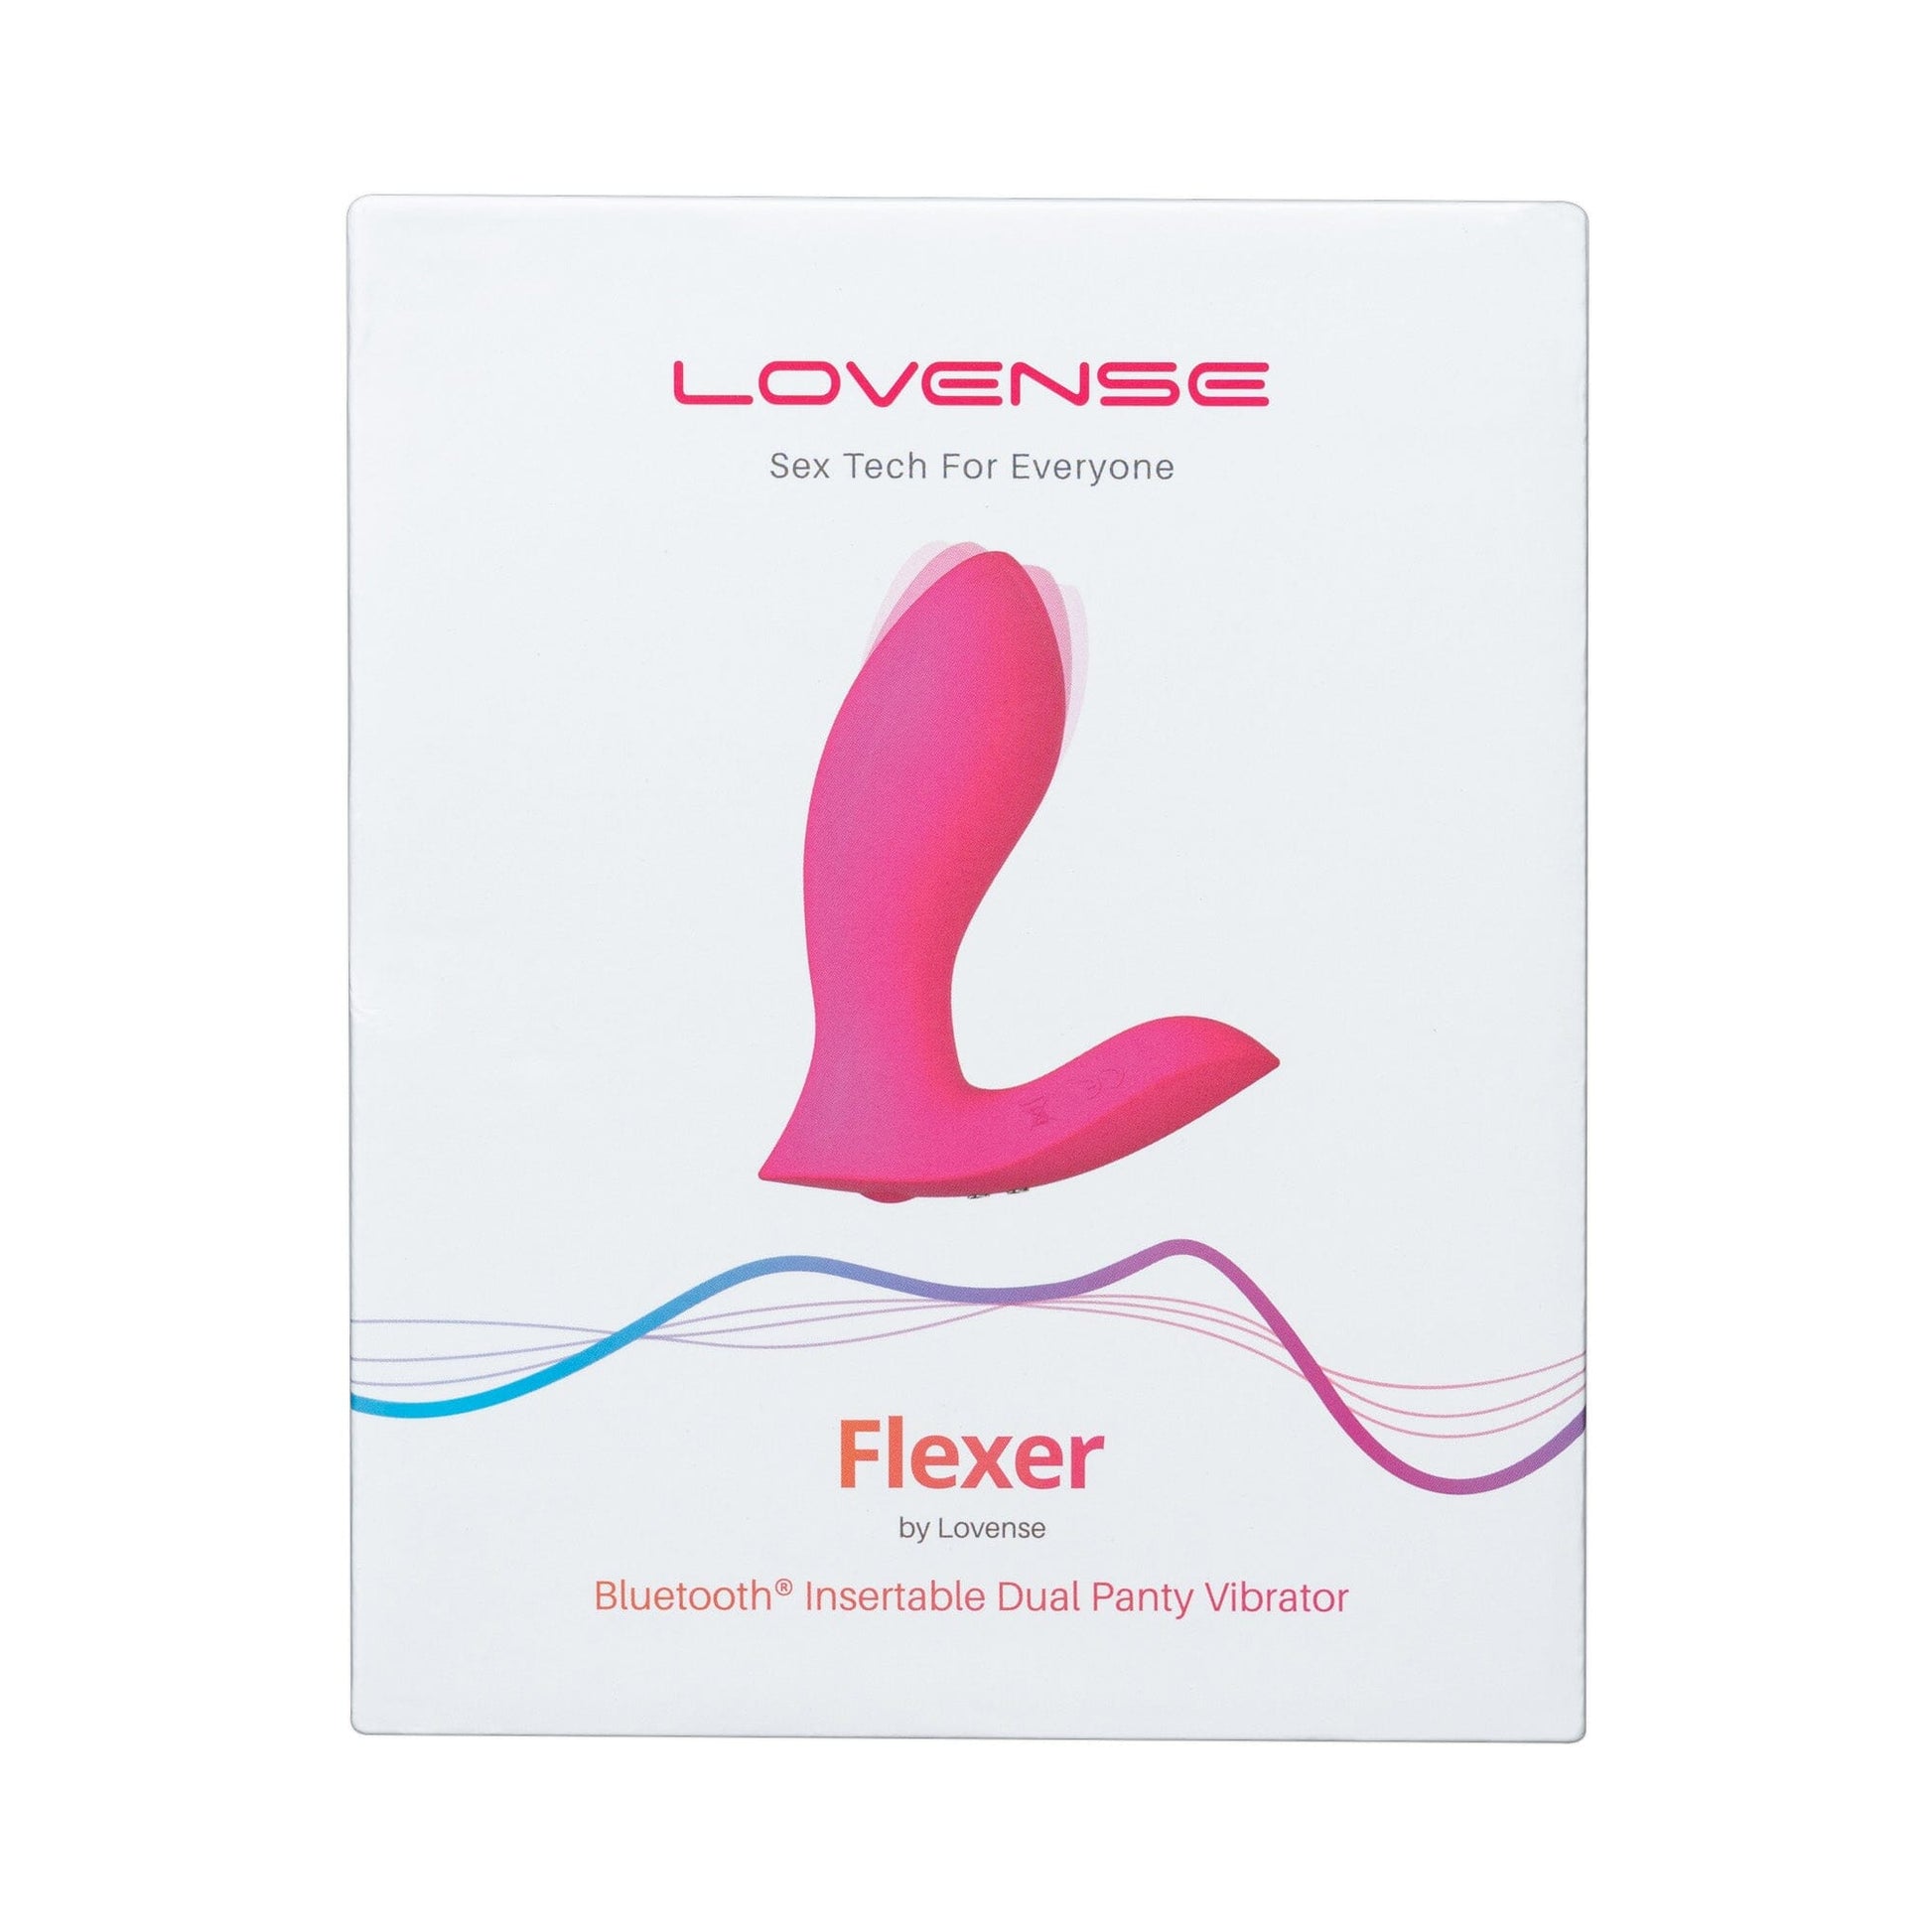 LOVENSE Flexer 遠程遙控智能仿指摳動震動器 雙頭按摩器 購買